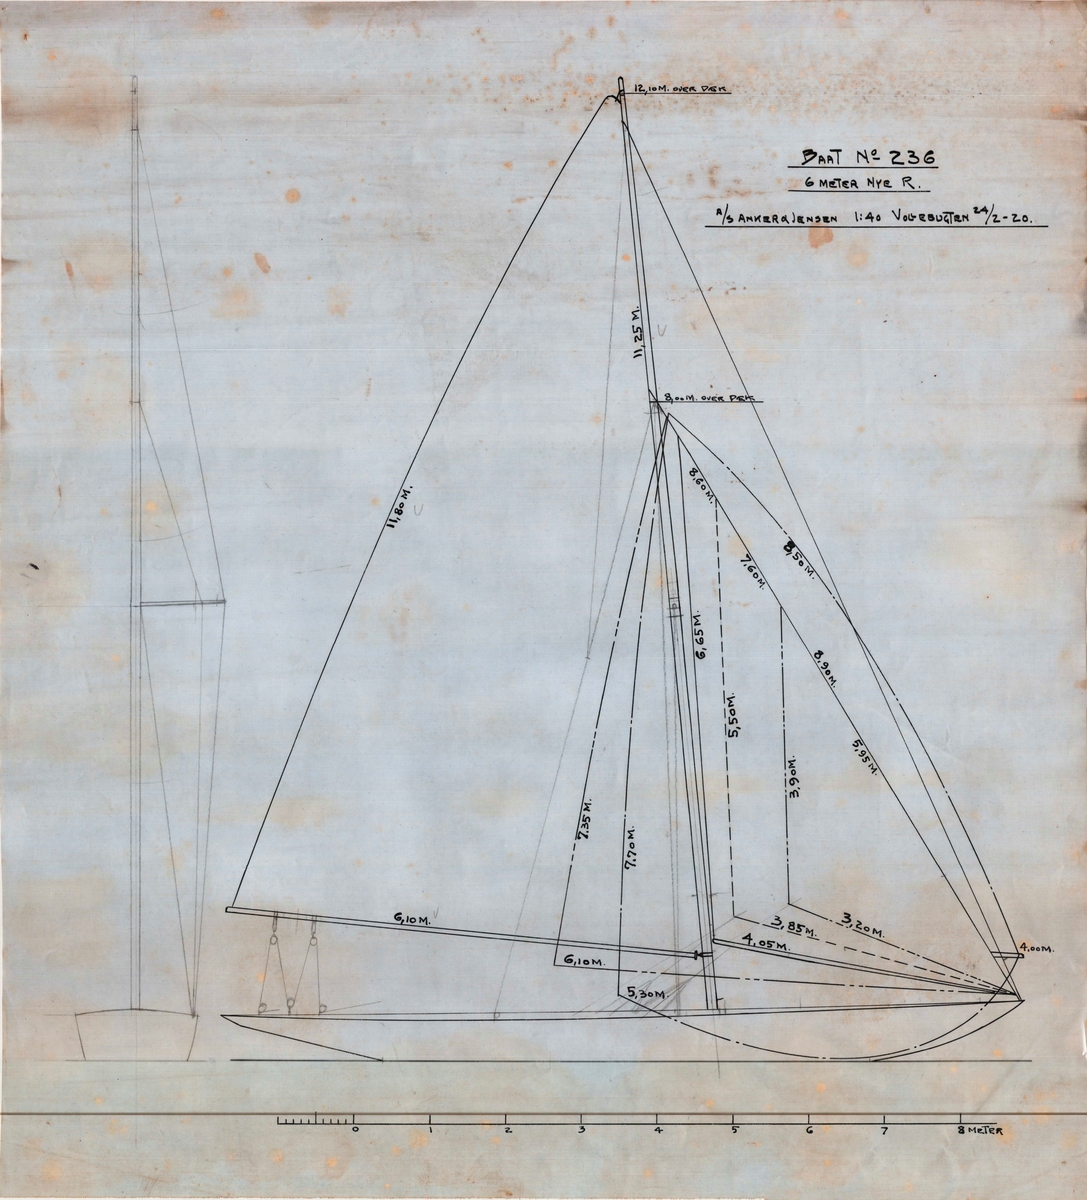 Stående rigg / seiltegning av 6meter R båt 'Jo'. Skala: 1:40